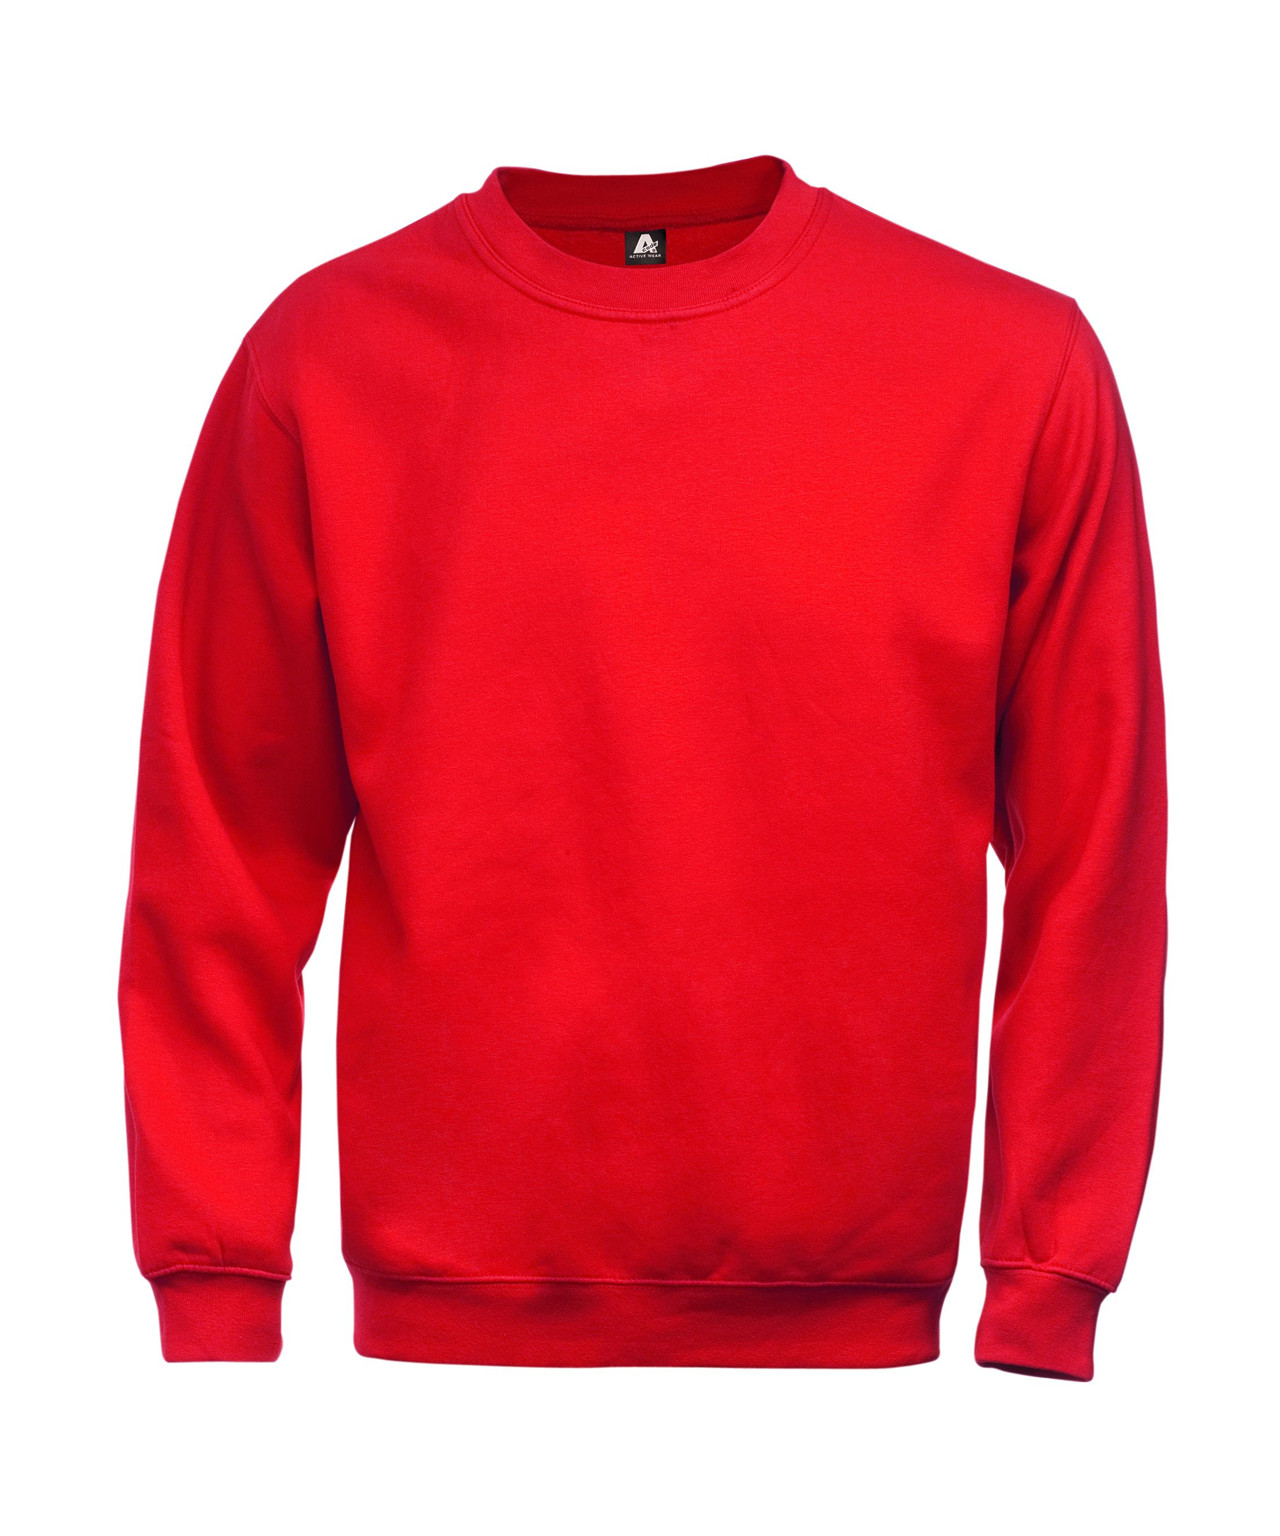 Billede af Kansas/Fristads A-Code klassisk sweatshirt (Rød, S) hos Specialbutikken